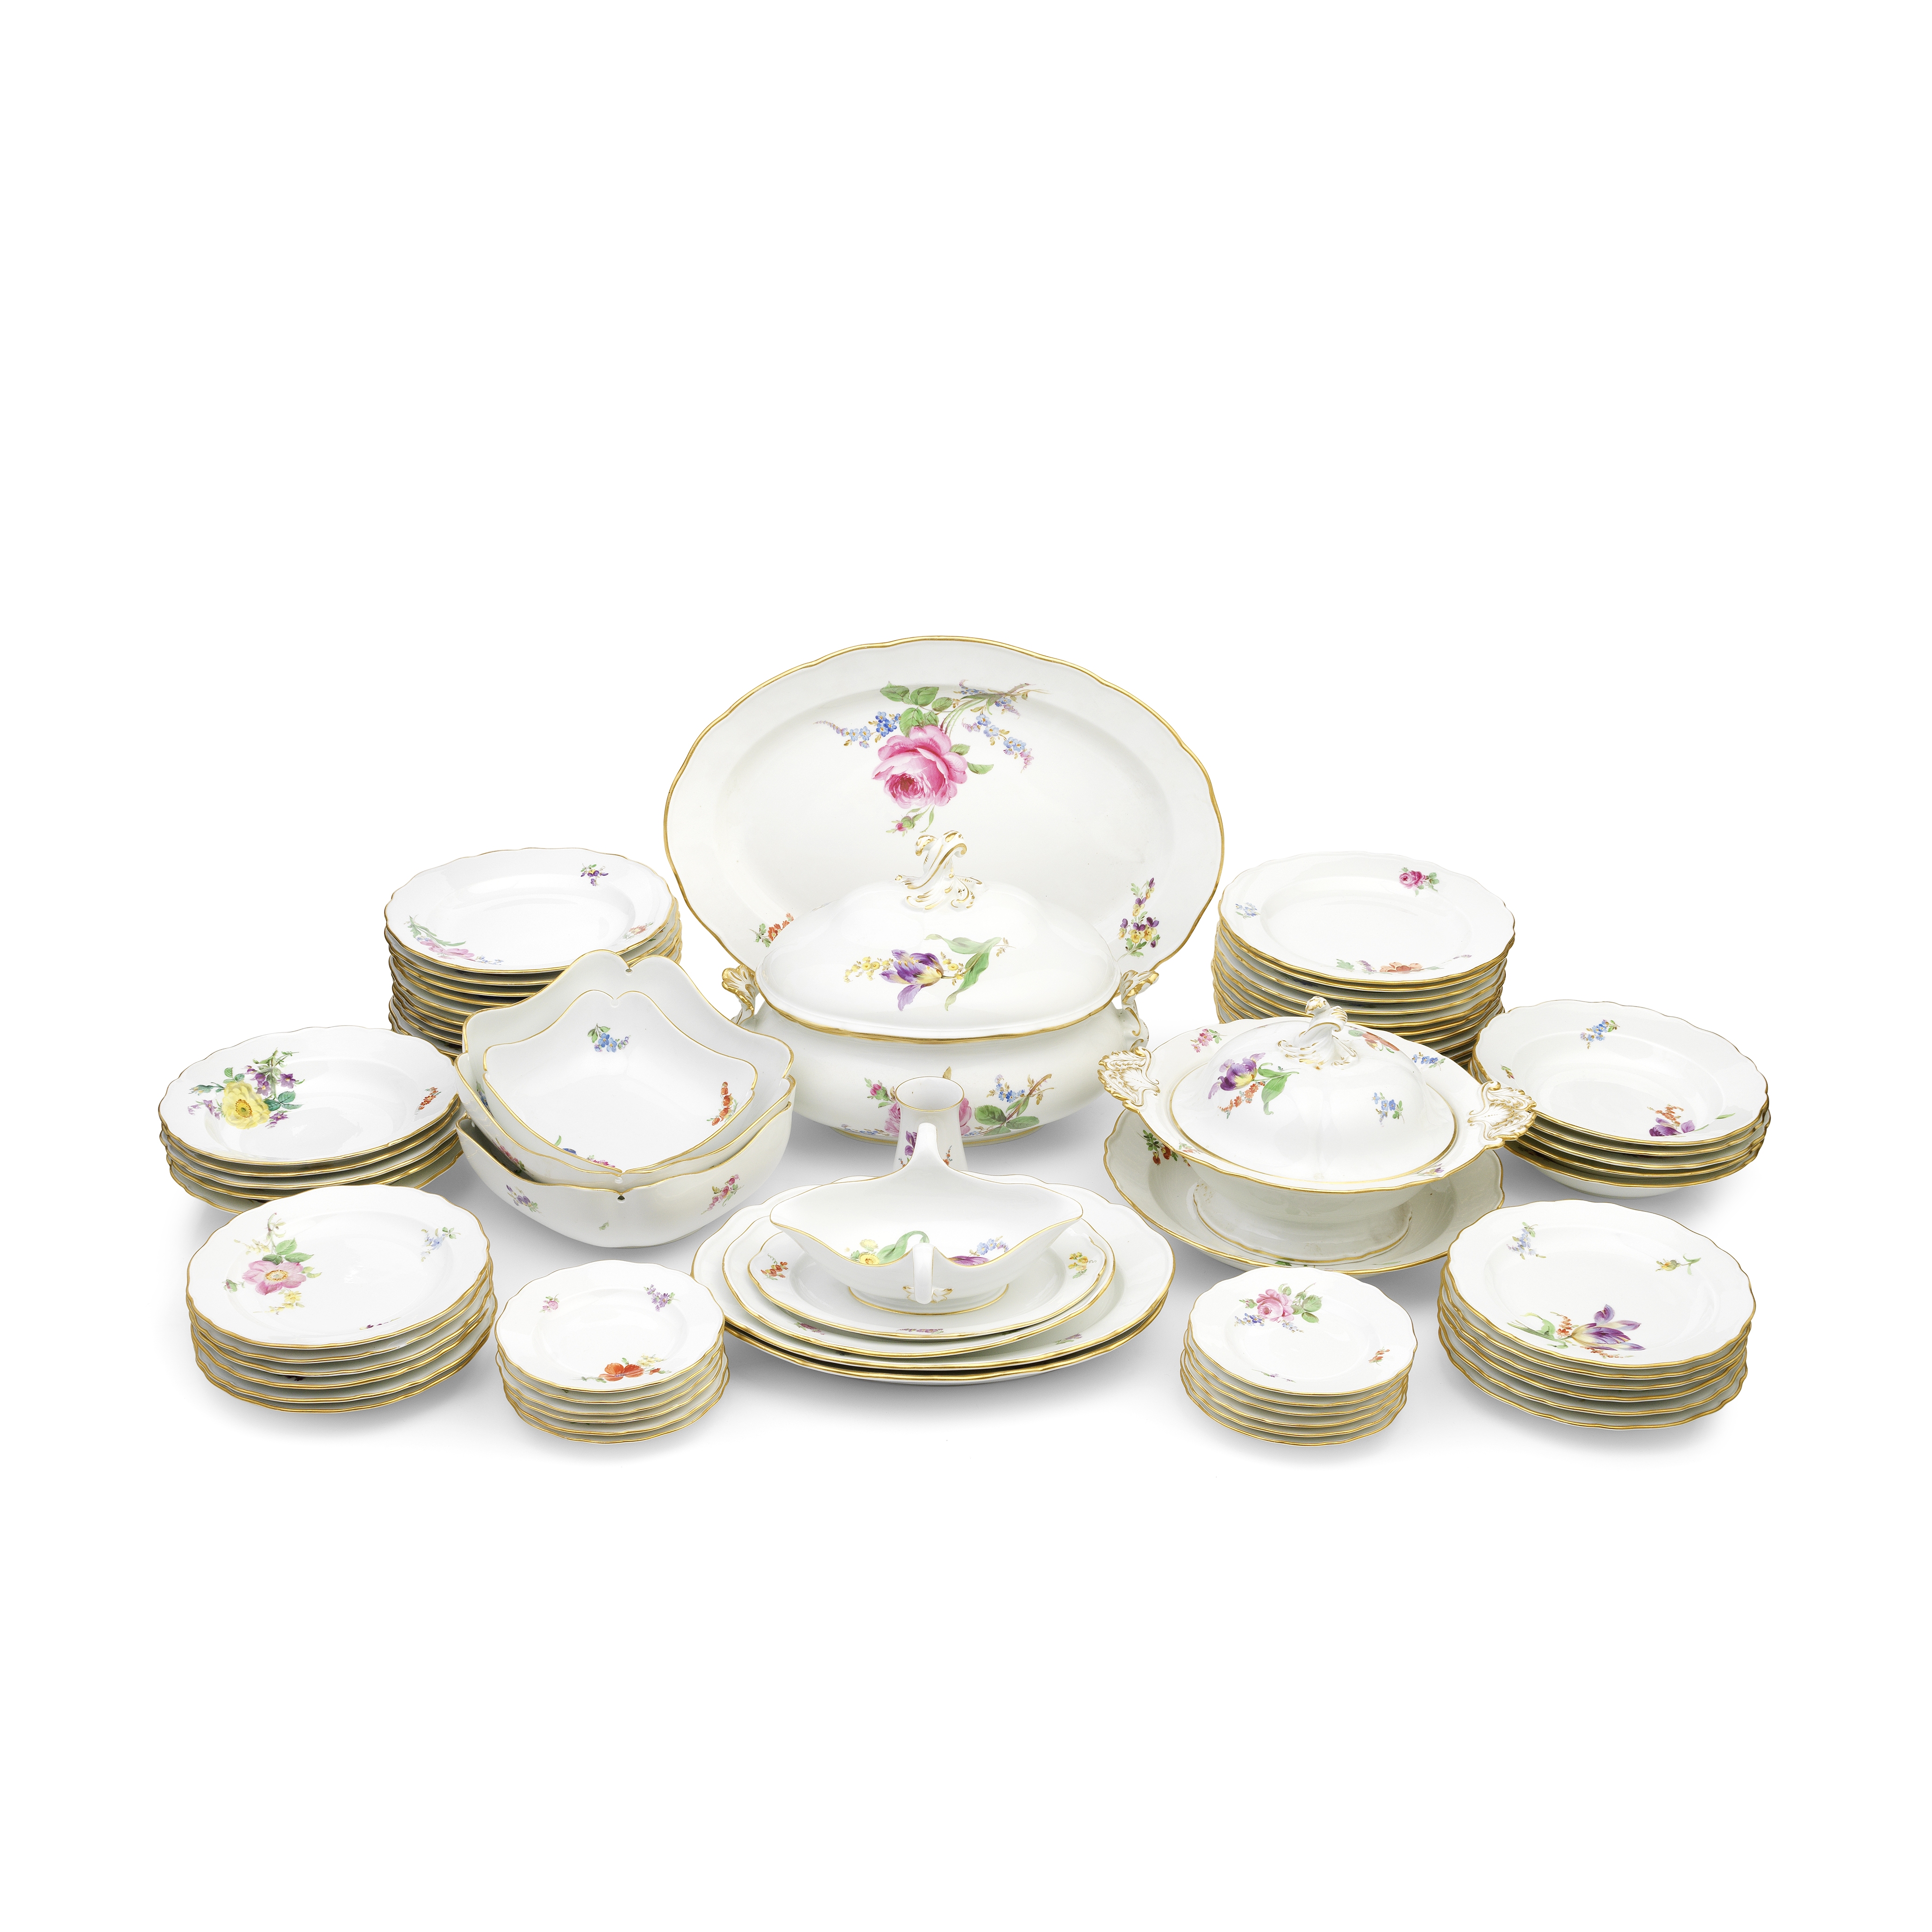 An extensive 20th century Meissen porcelain dinner service